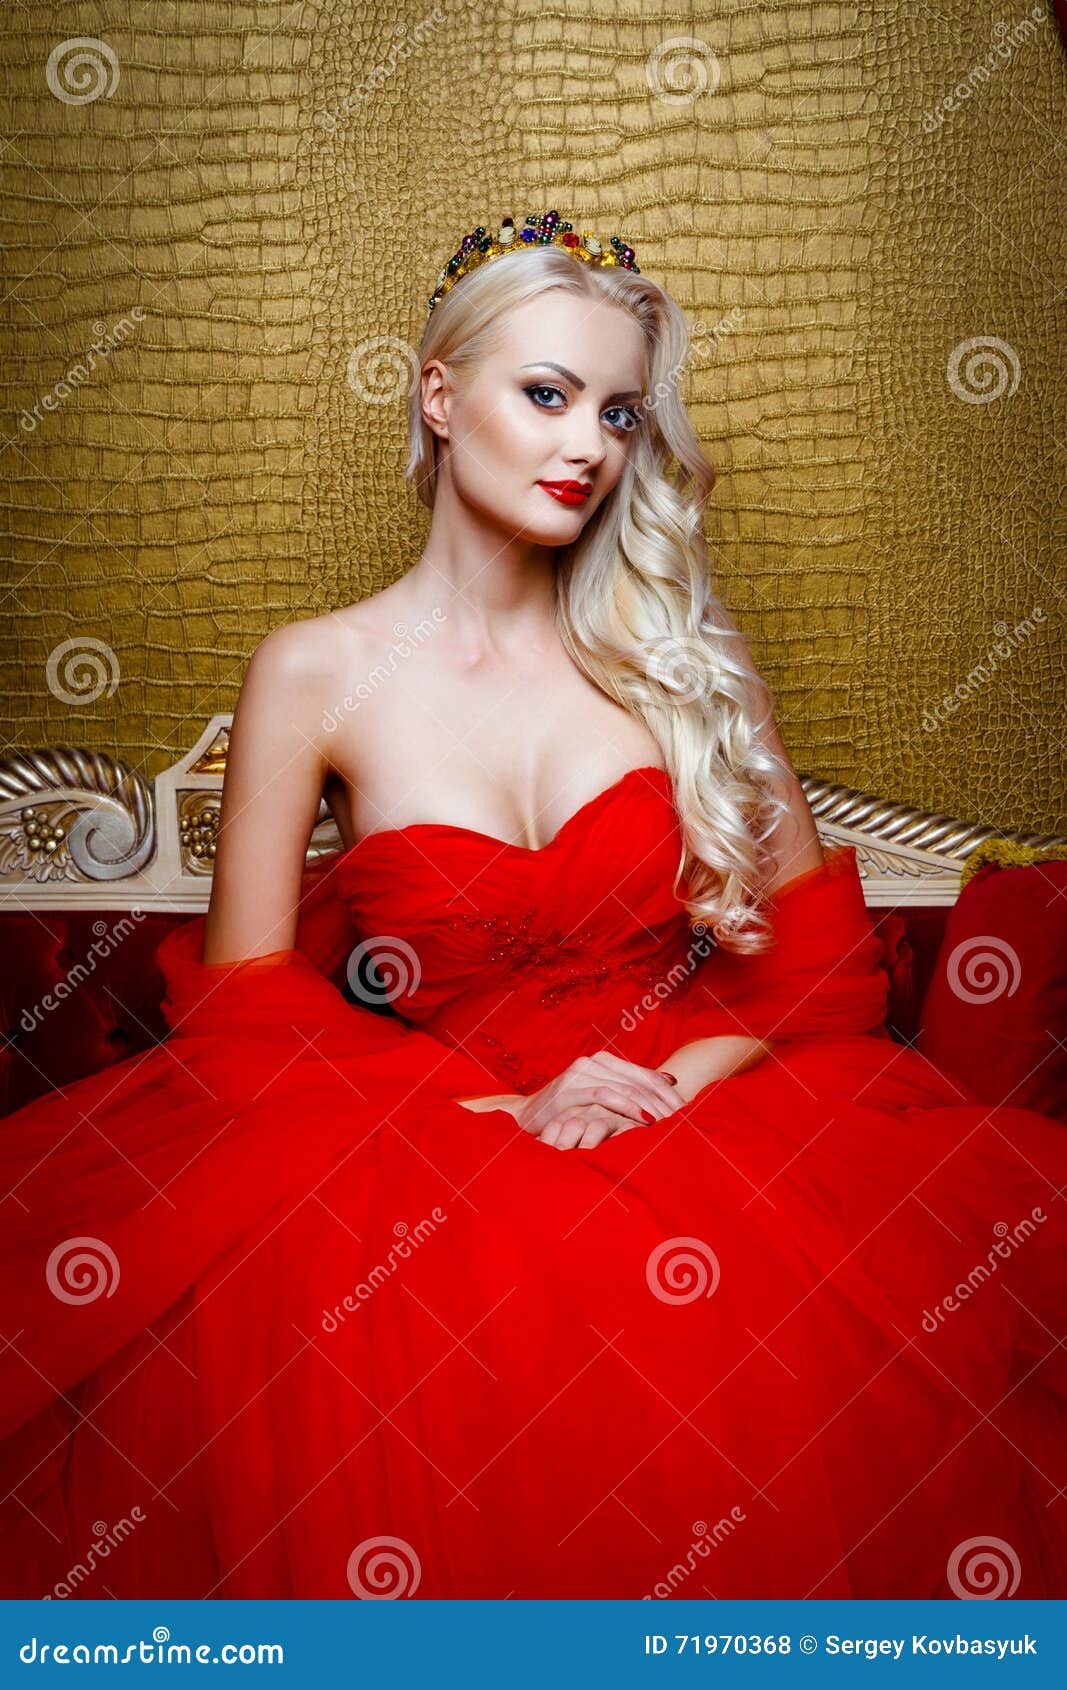 women, Red Dress, Blonde, Field Wallpapers HD / Desktop 